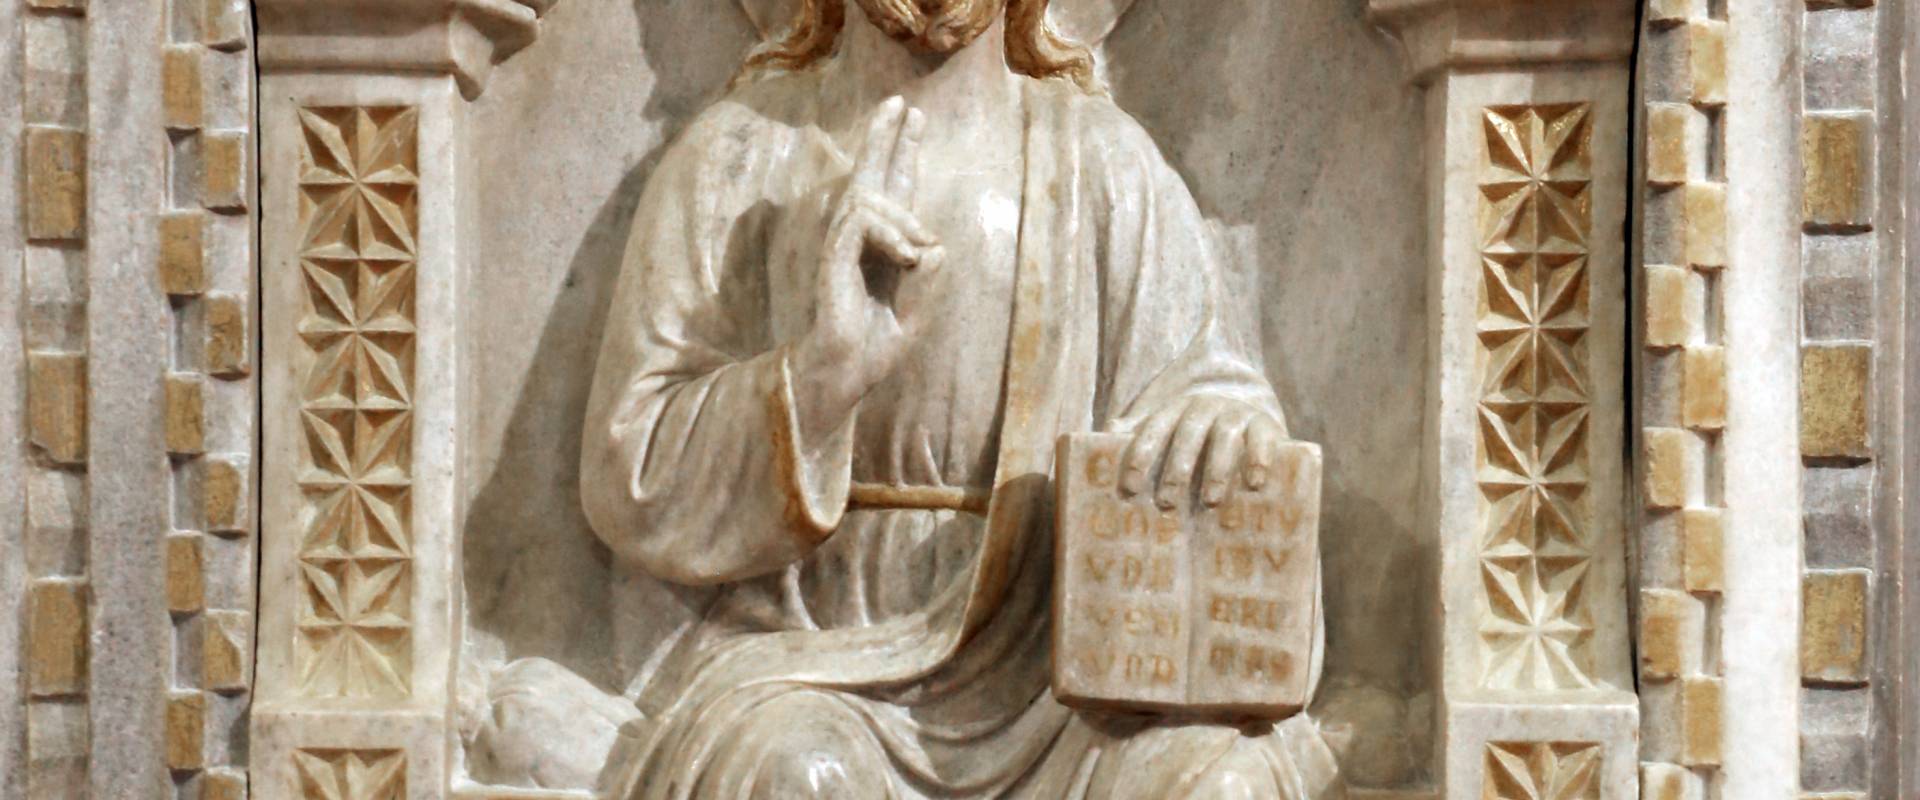 Sarcofago del beato giacomo salomoni, 1340 ca., da s. giacomo apostolo in san domenico, 09 cristo benedicente foto di Sailko